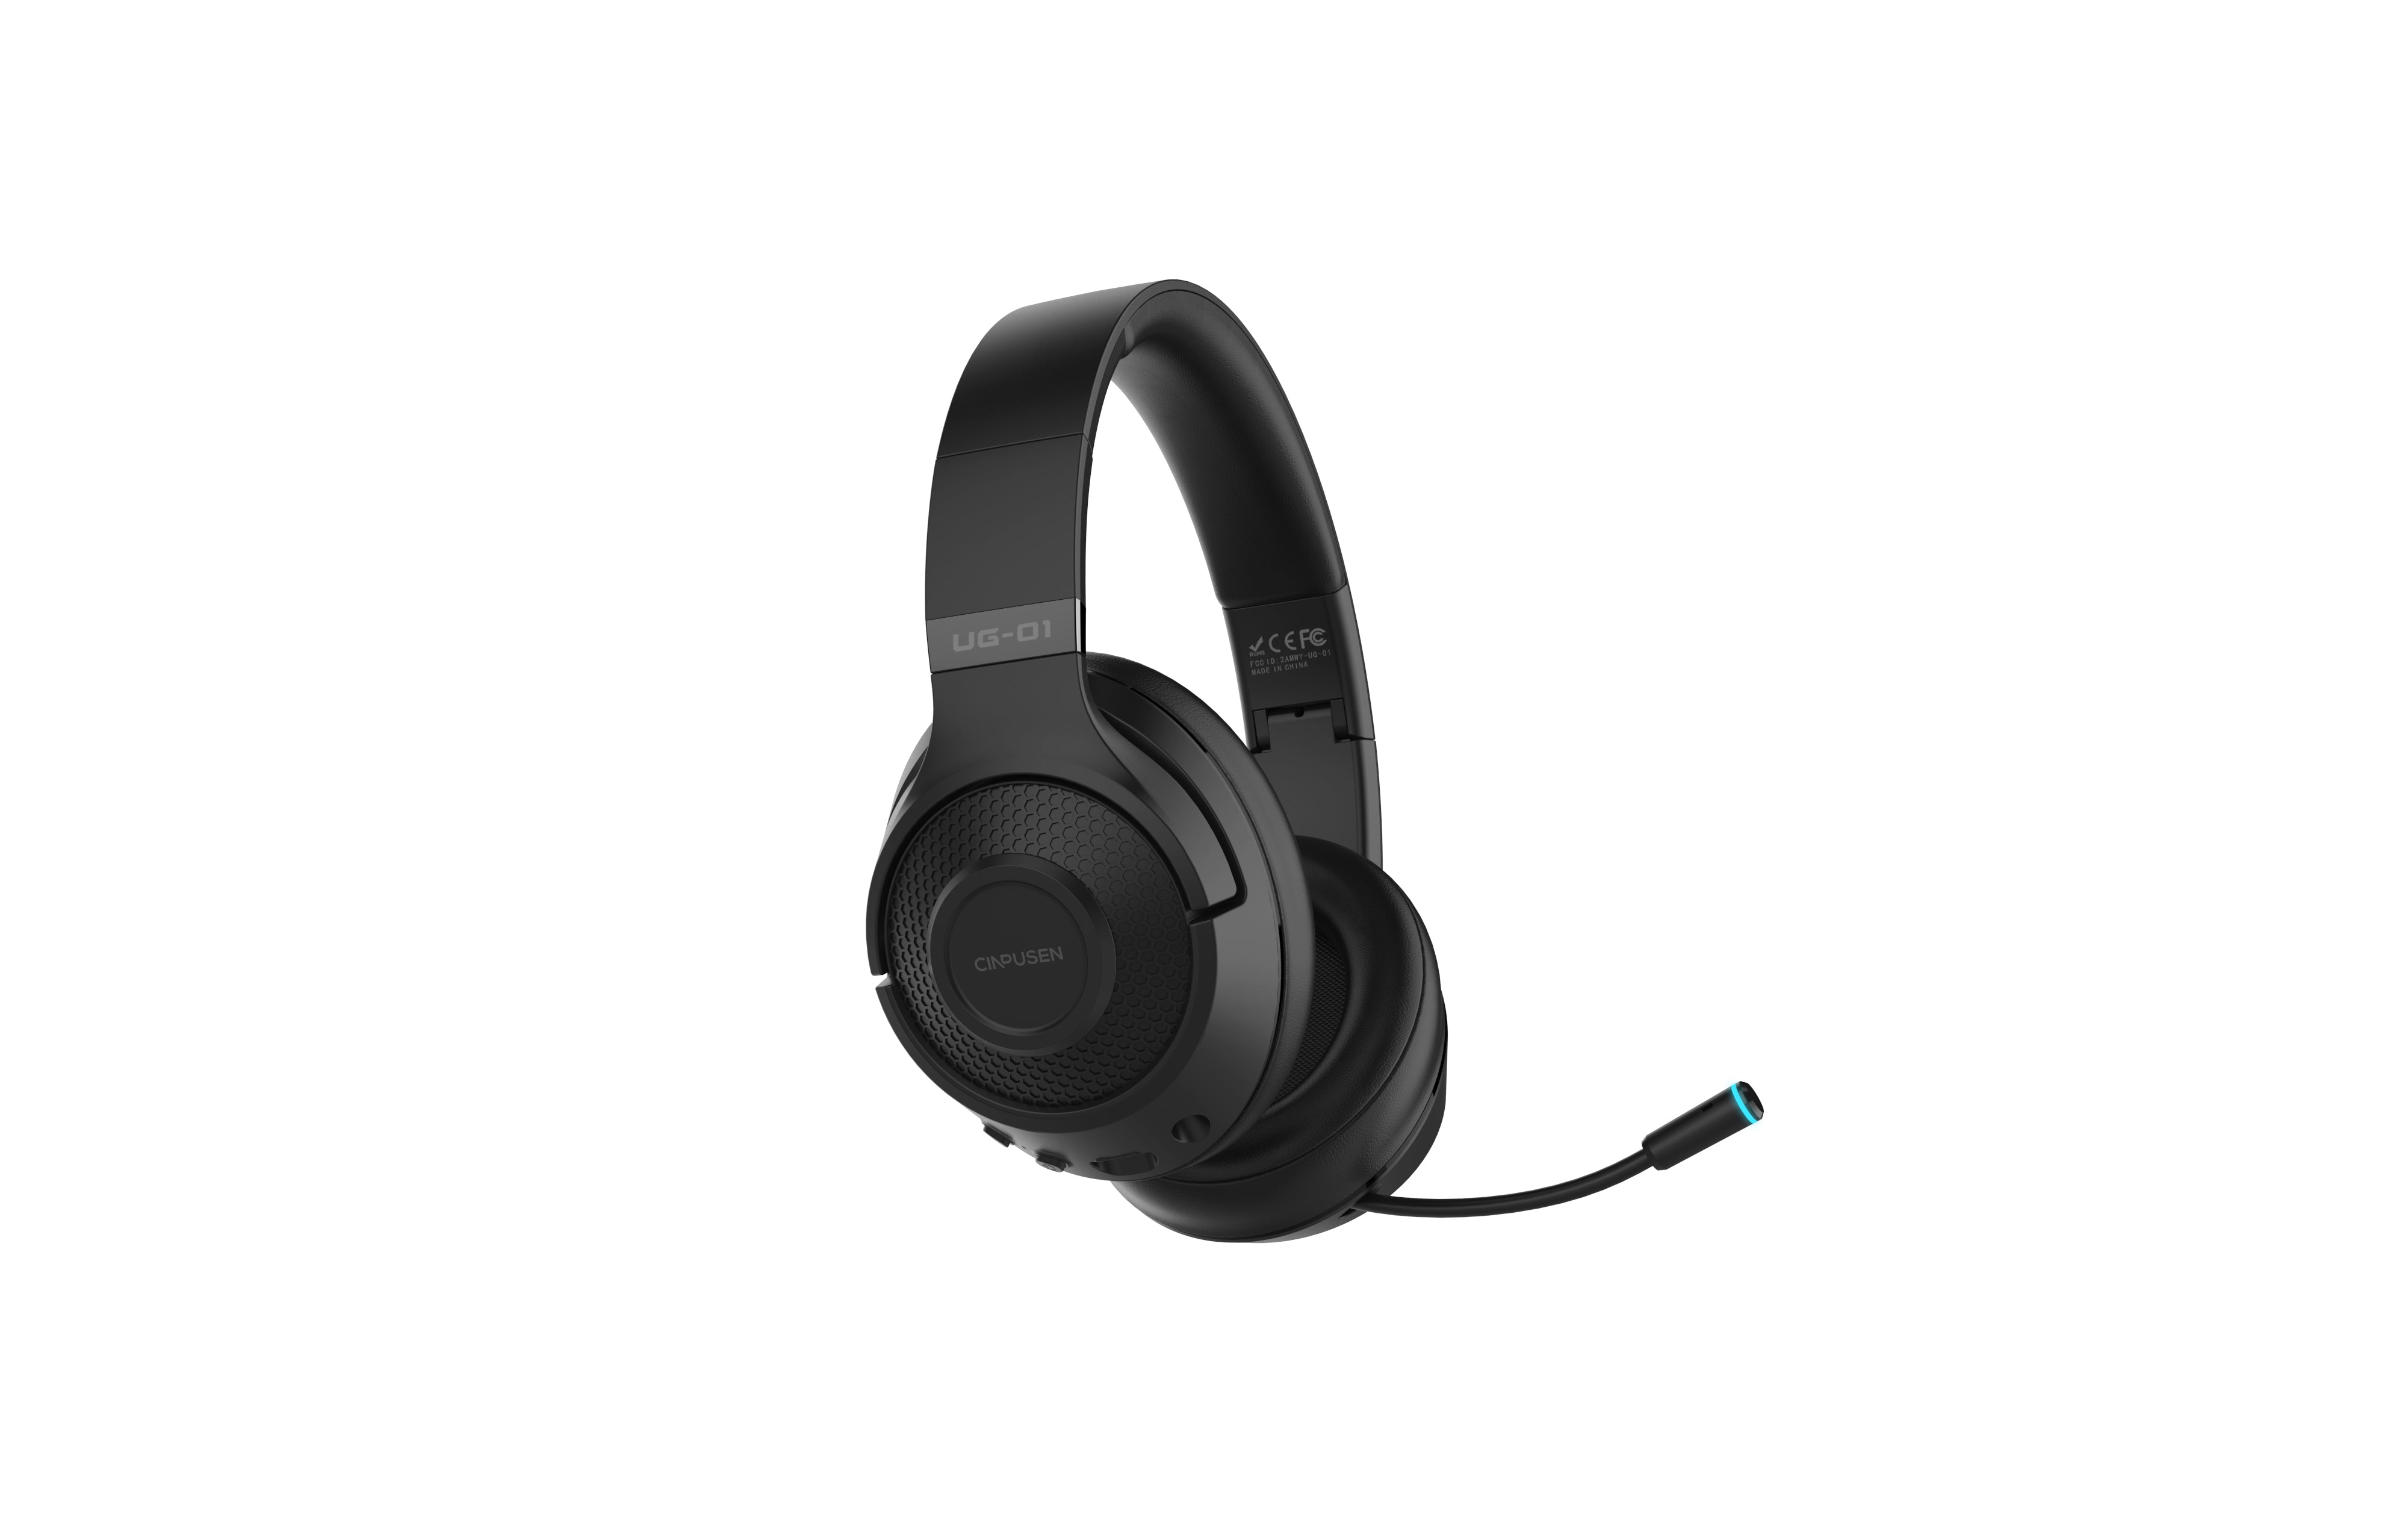 Woegel UG-01 – draadloze gaming headset - zwart